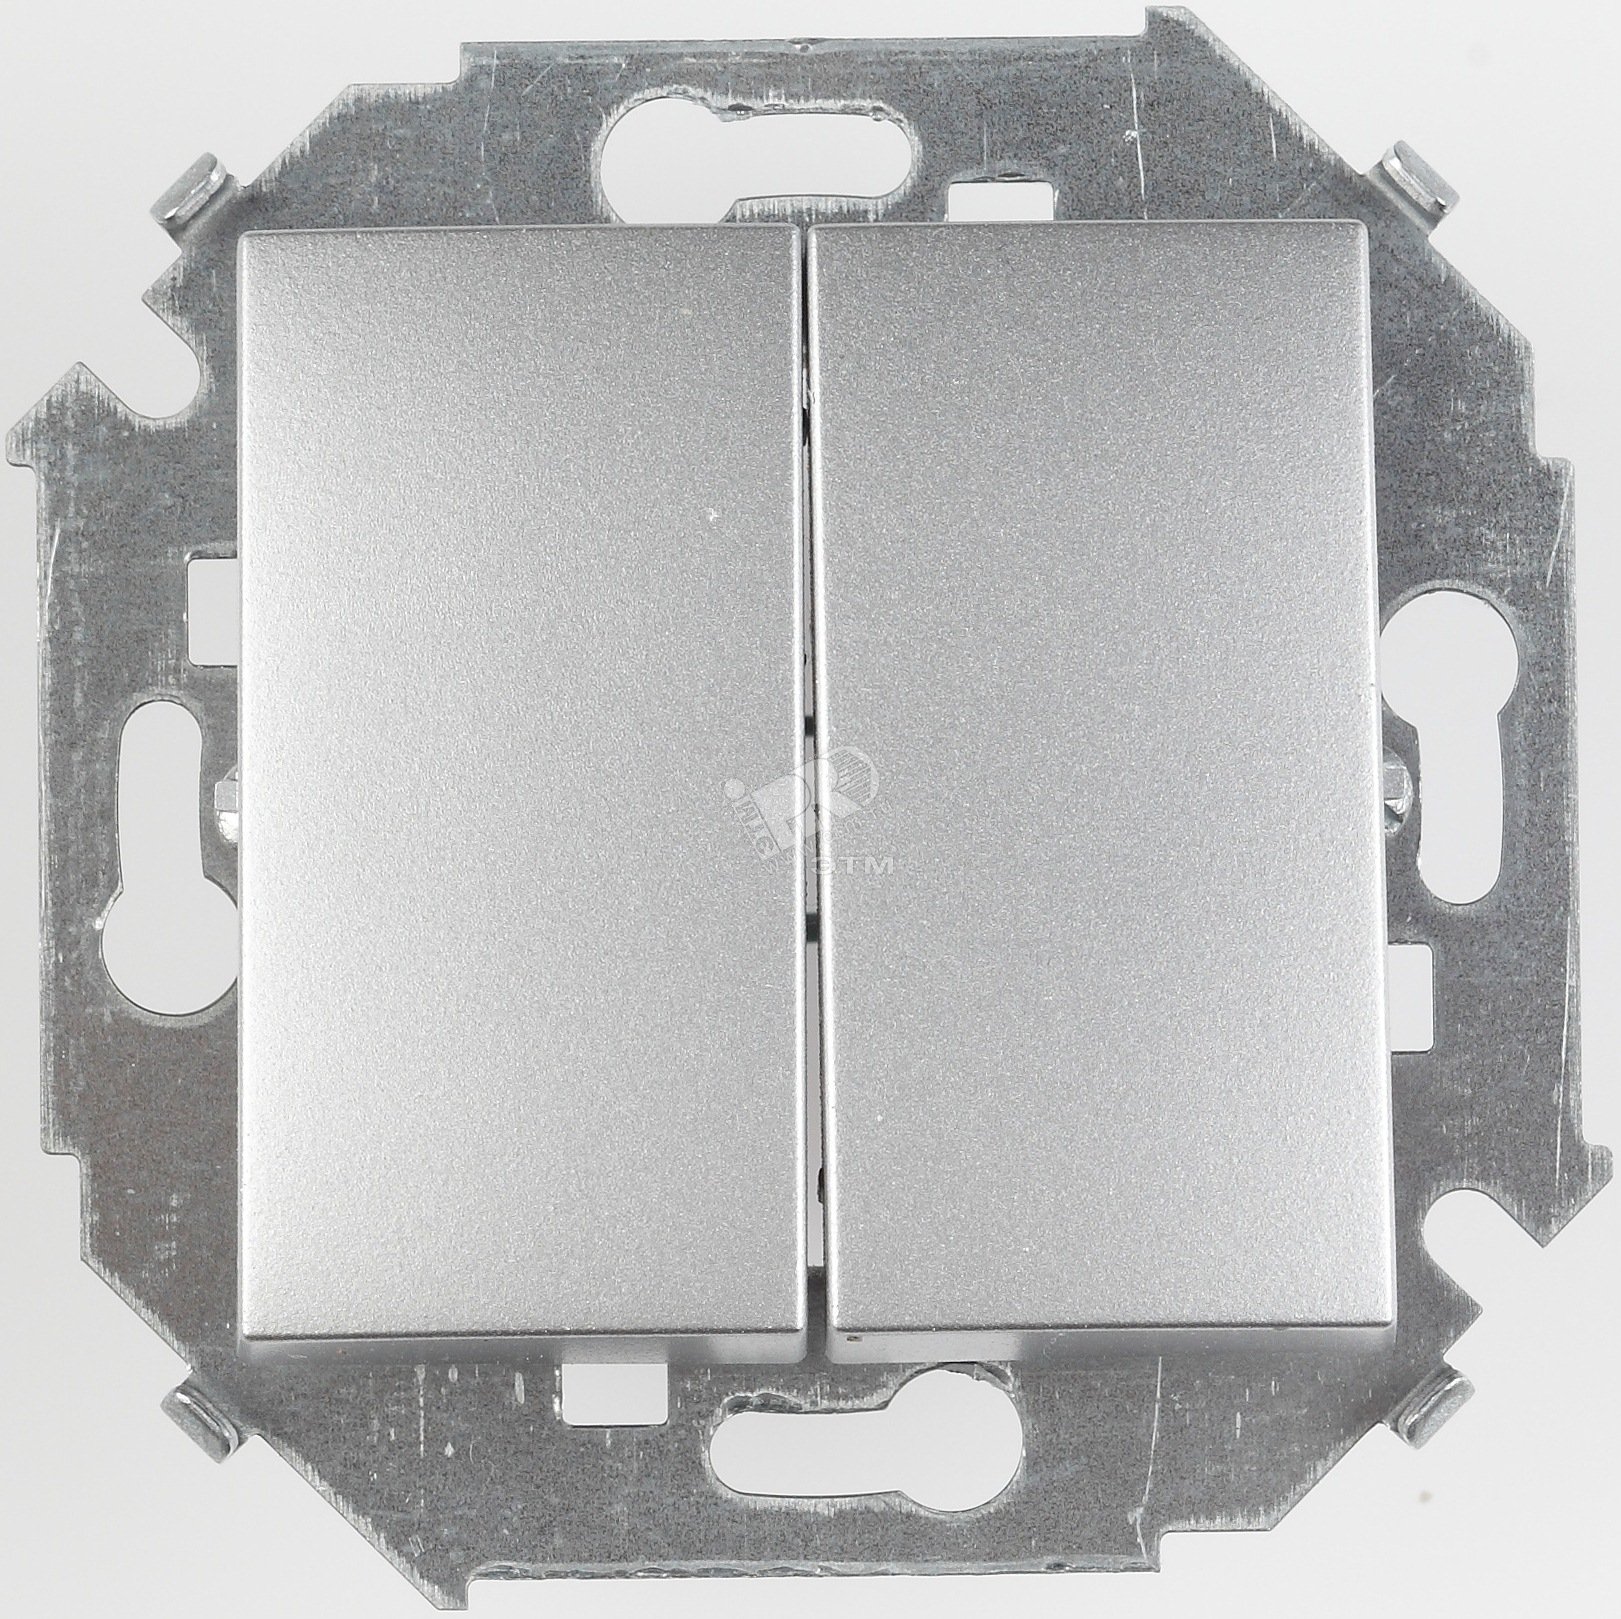 Выключатель двухклавишнный проходной (переключатель), 16А, 250В, винтовой зажим, алюминий 1591397-033 Simon